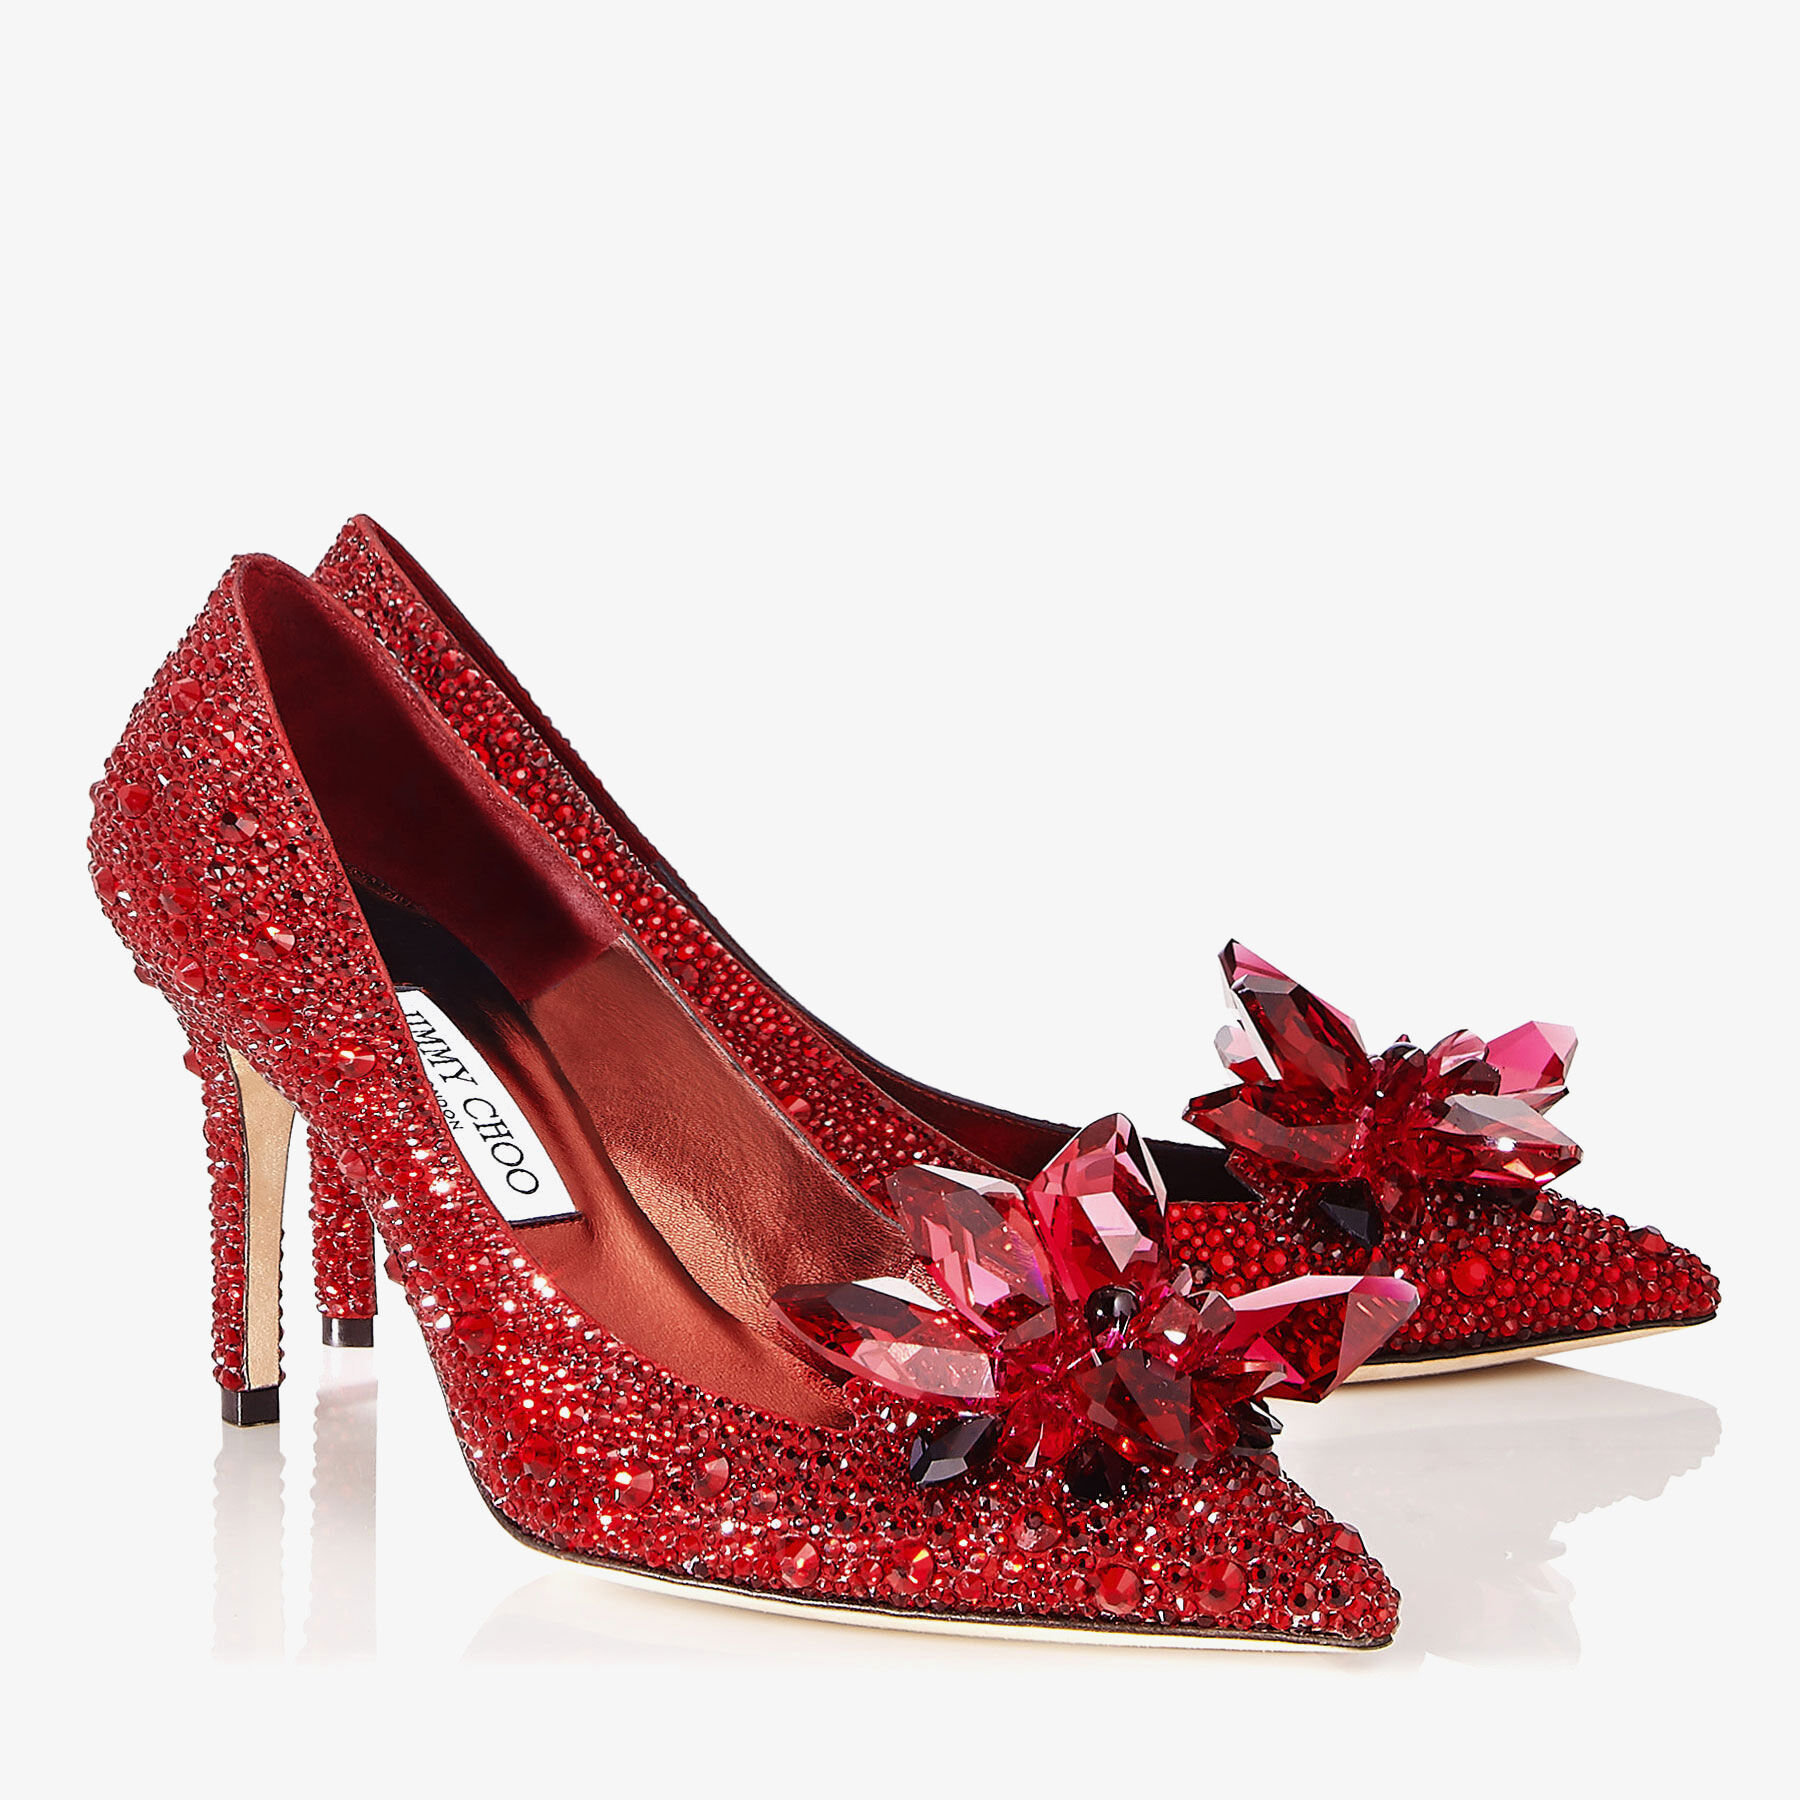 Women's Red Heels, Shoes